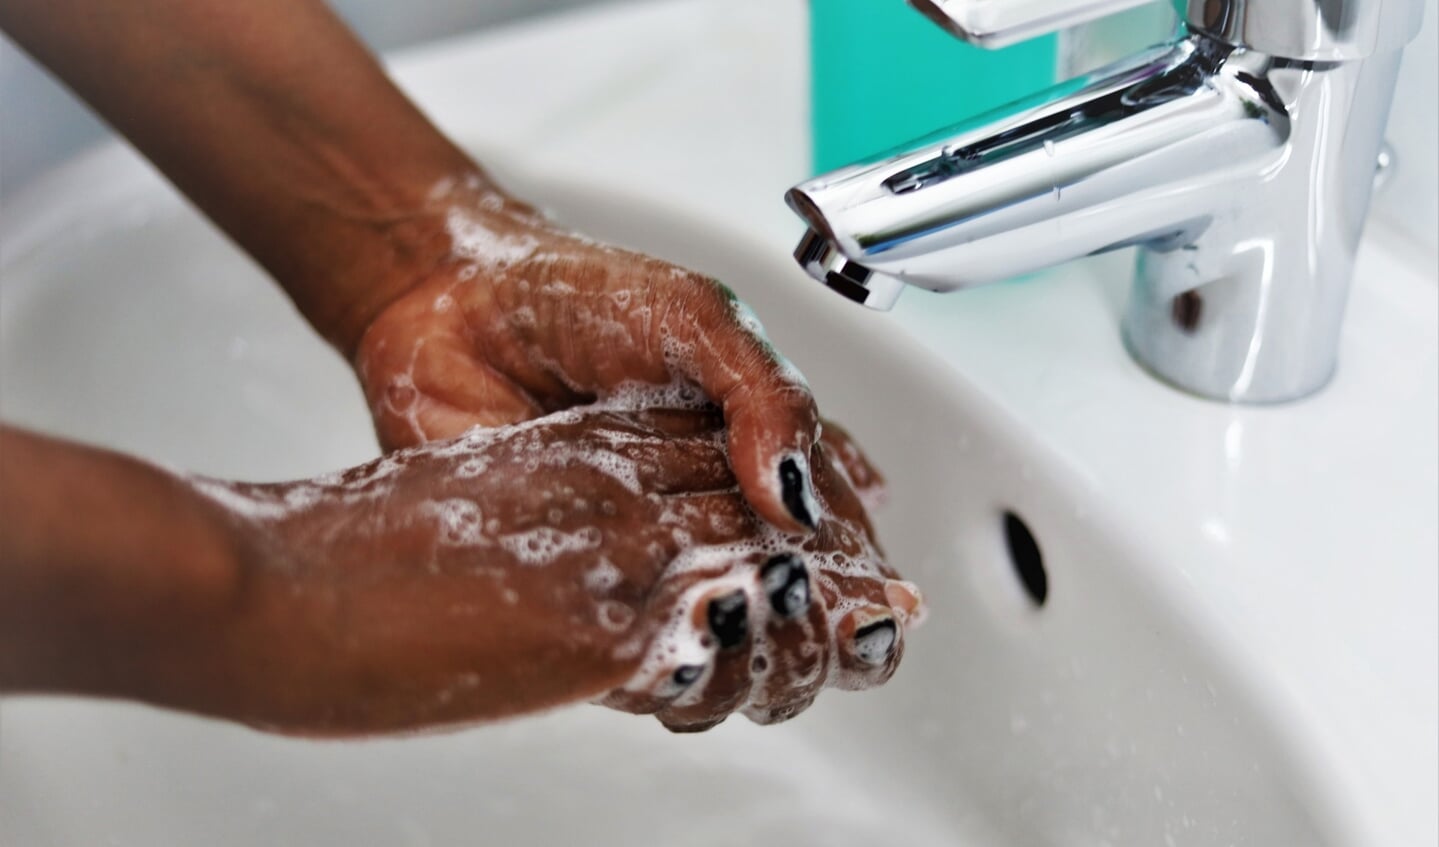 Vaccineren, testen en andere basisadviezen zoals handen goed wassen blijven belangrijk.